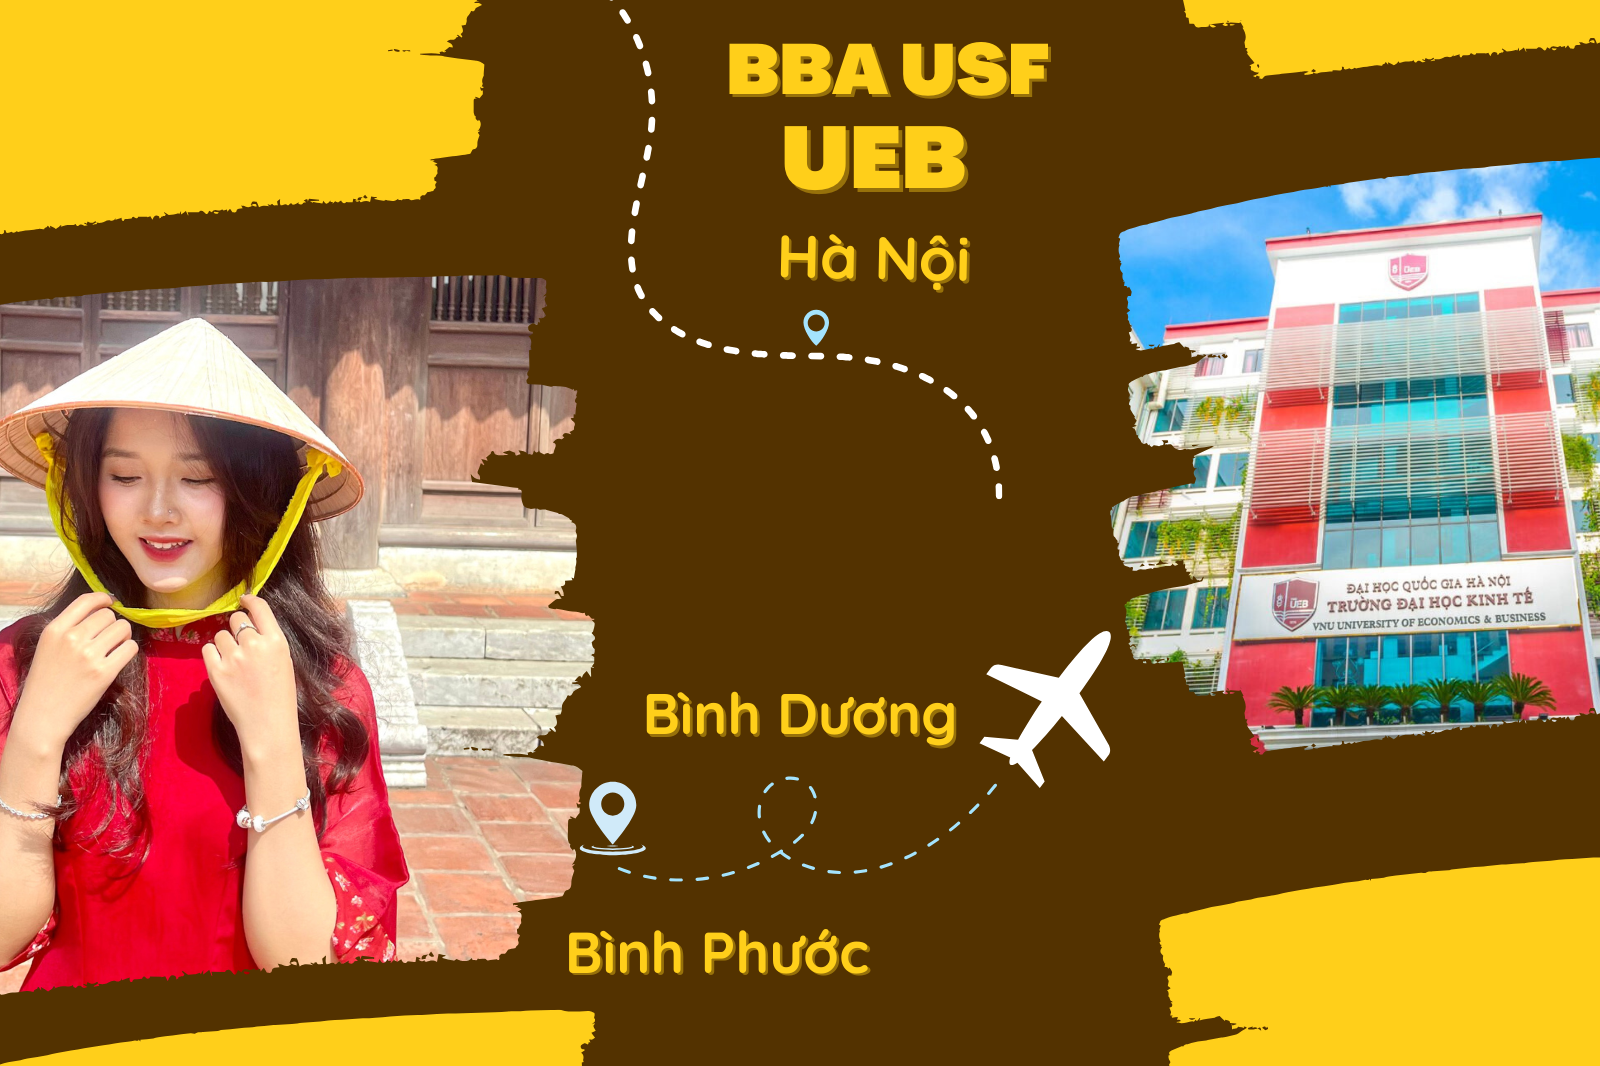 Nhất định phải đến Hà Nội để học Chương trình BBA USF ở UEB